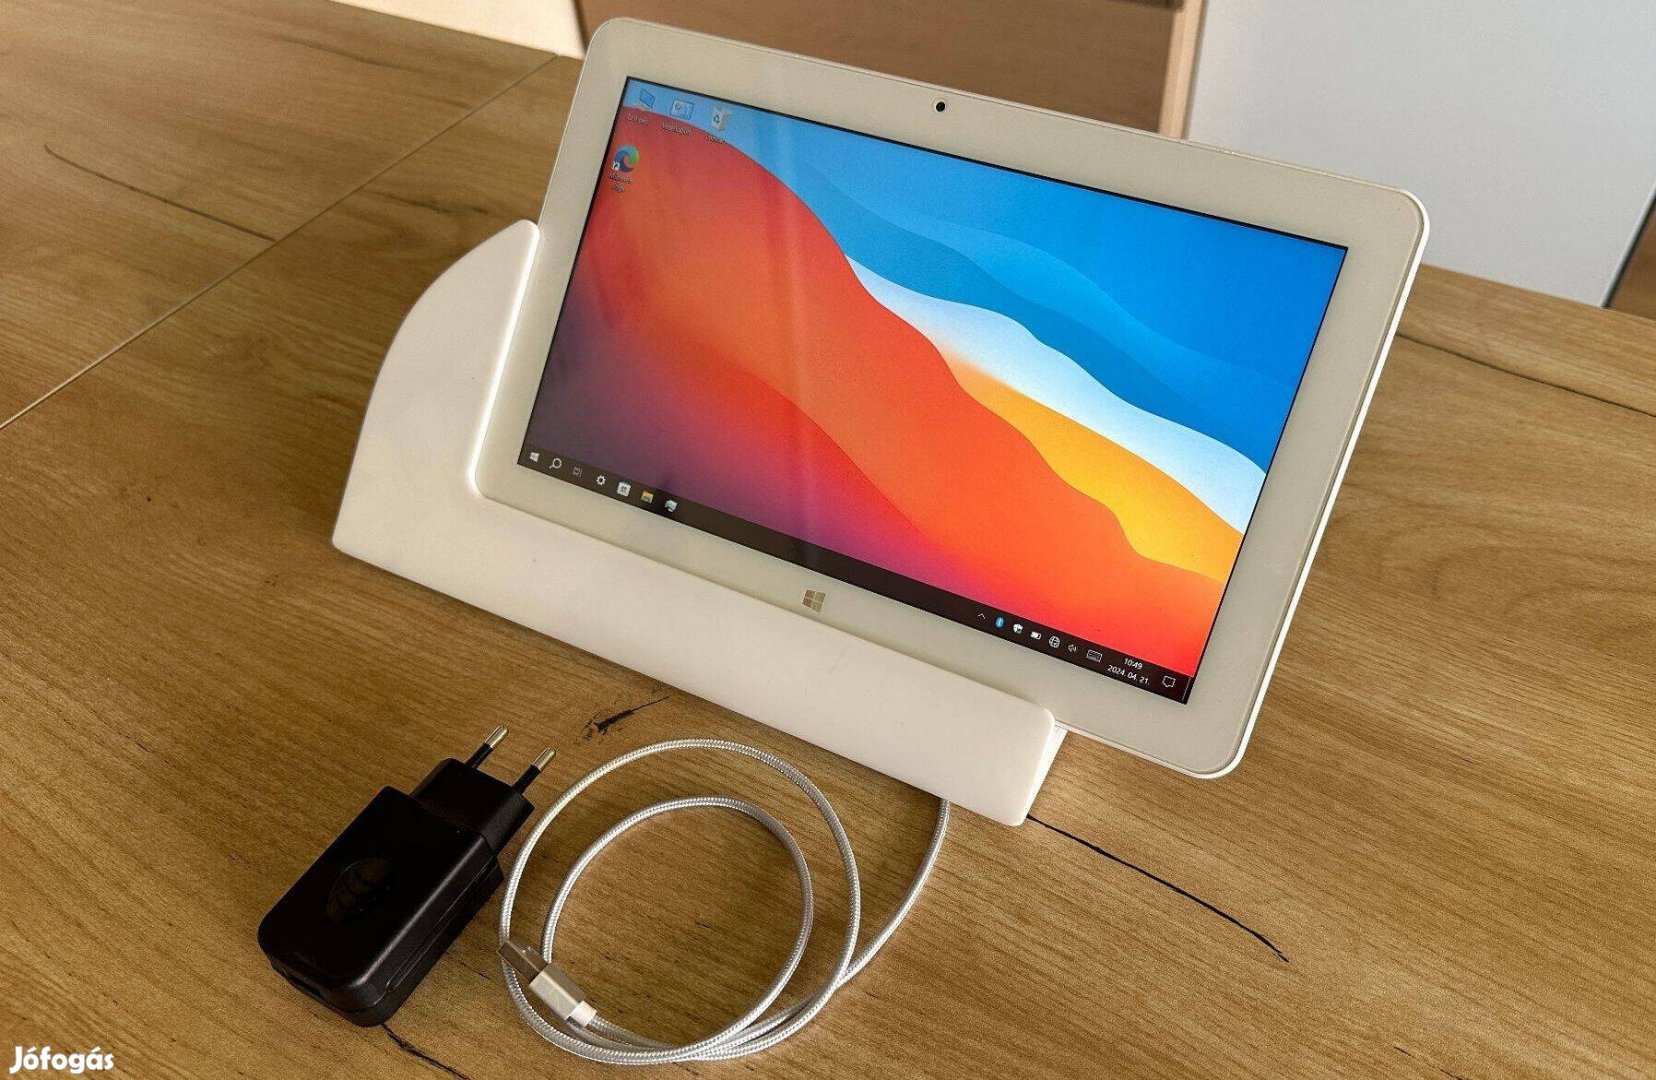 Eladó Cube iwork 11 Windows 10 tablet (10.6", Intel x5-Z8350, 2/32 GB)